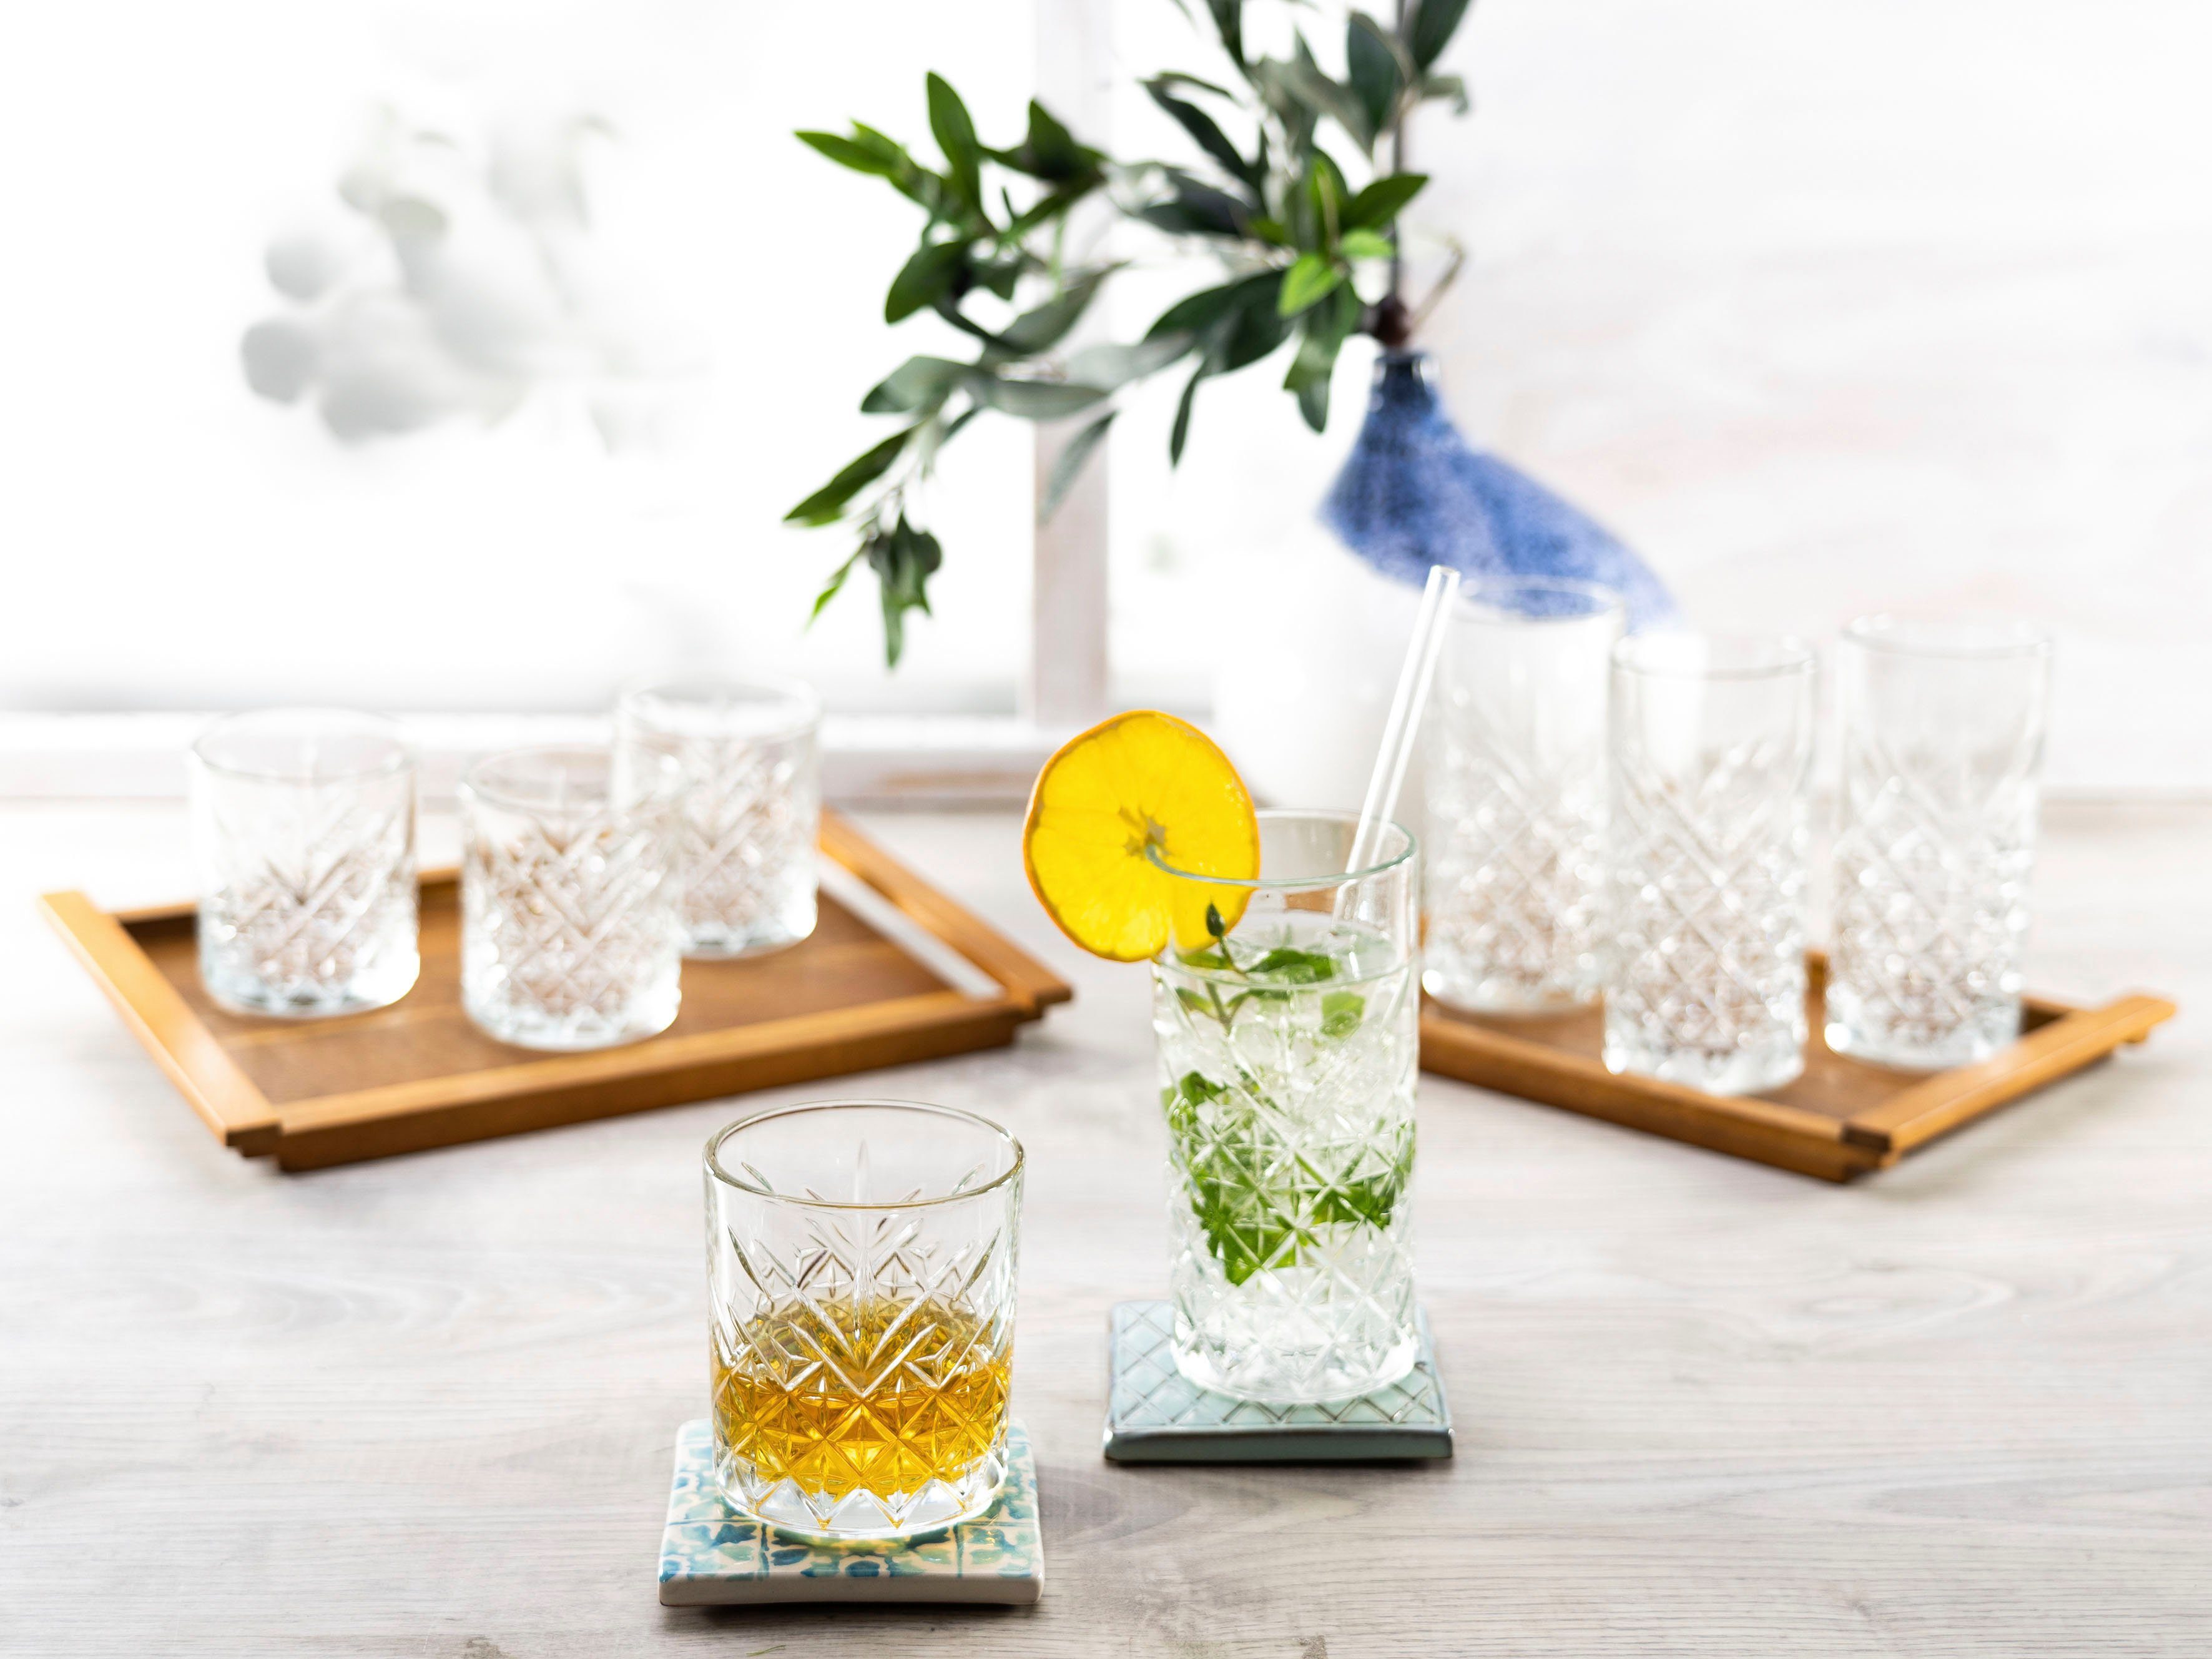 CreaTable Glazenset TIMELESS drinkglazen 4 whiskyglazen als set 8-delig) gevonden | OTTO